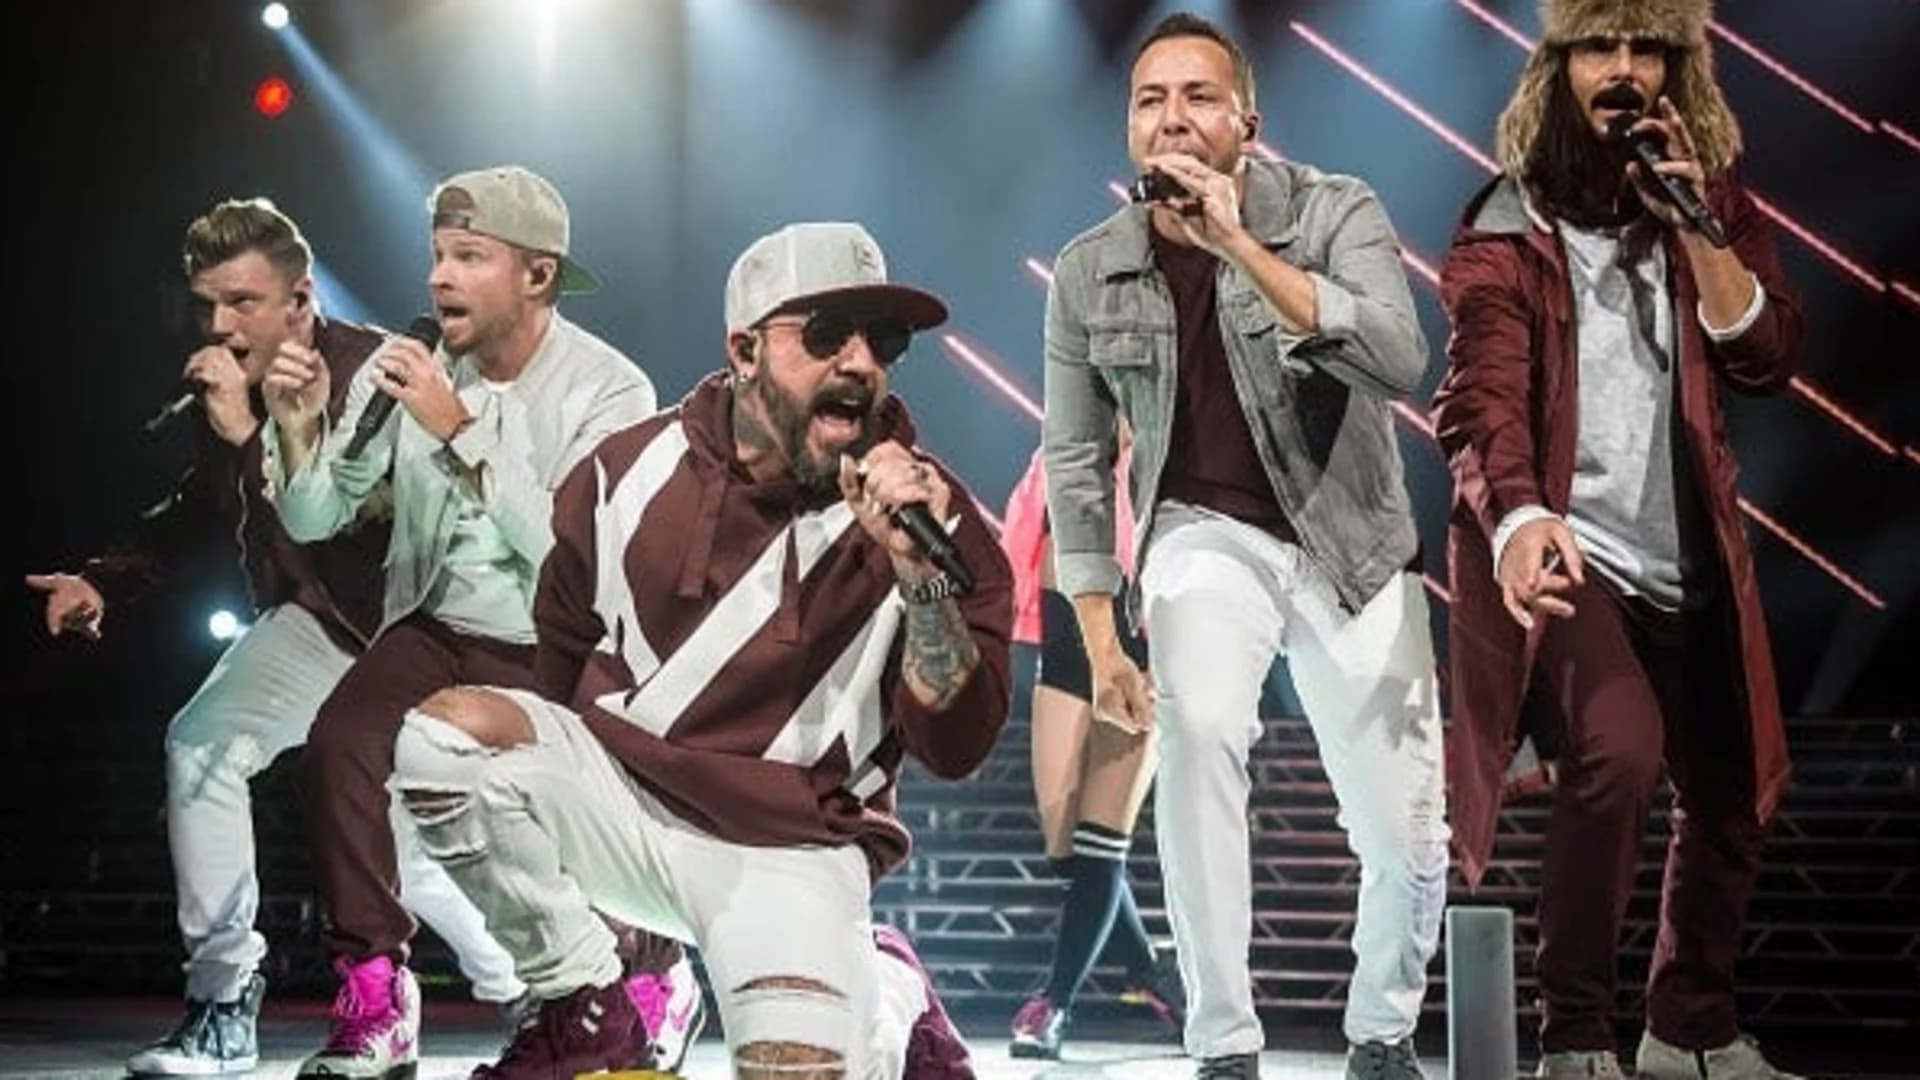 #N12BX: Backstreet Boys release new single